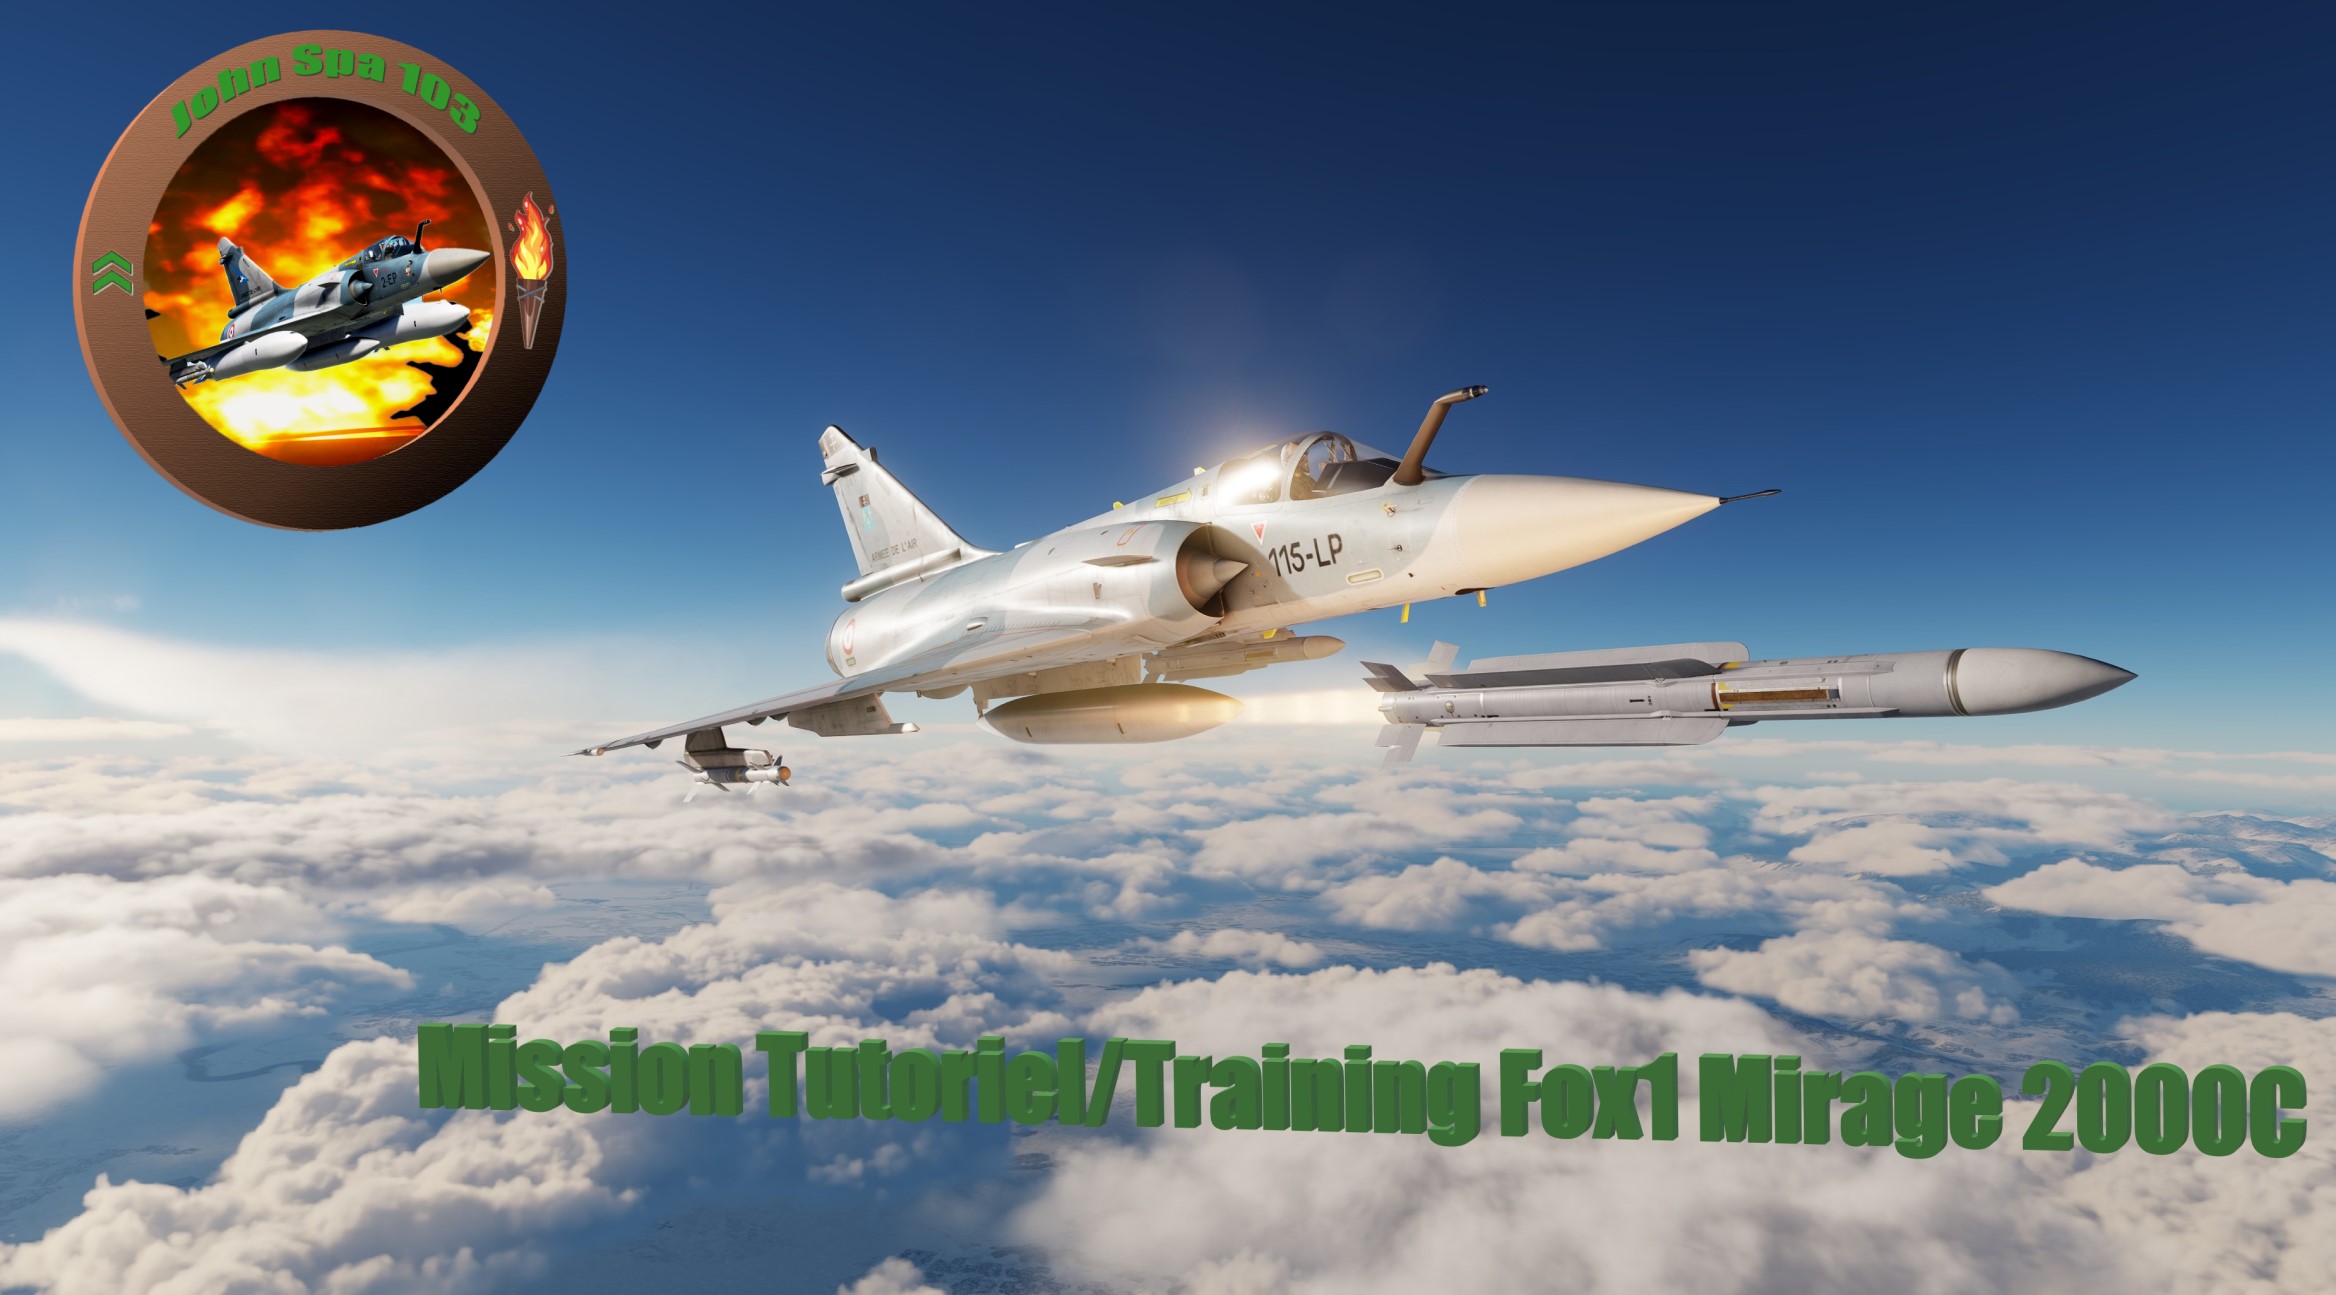 Mission Tutoriel / Training M2000C en français